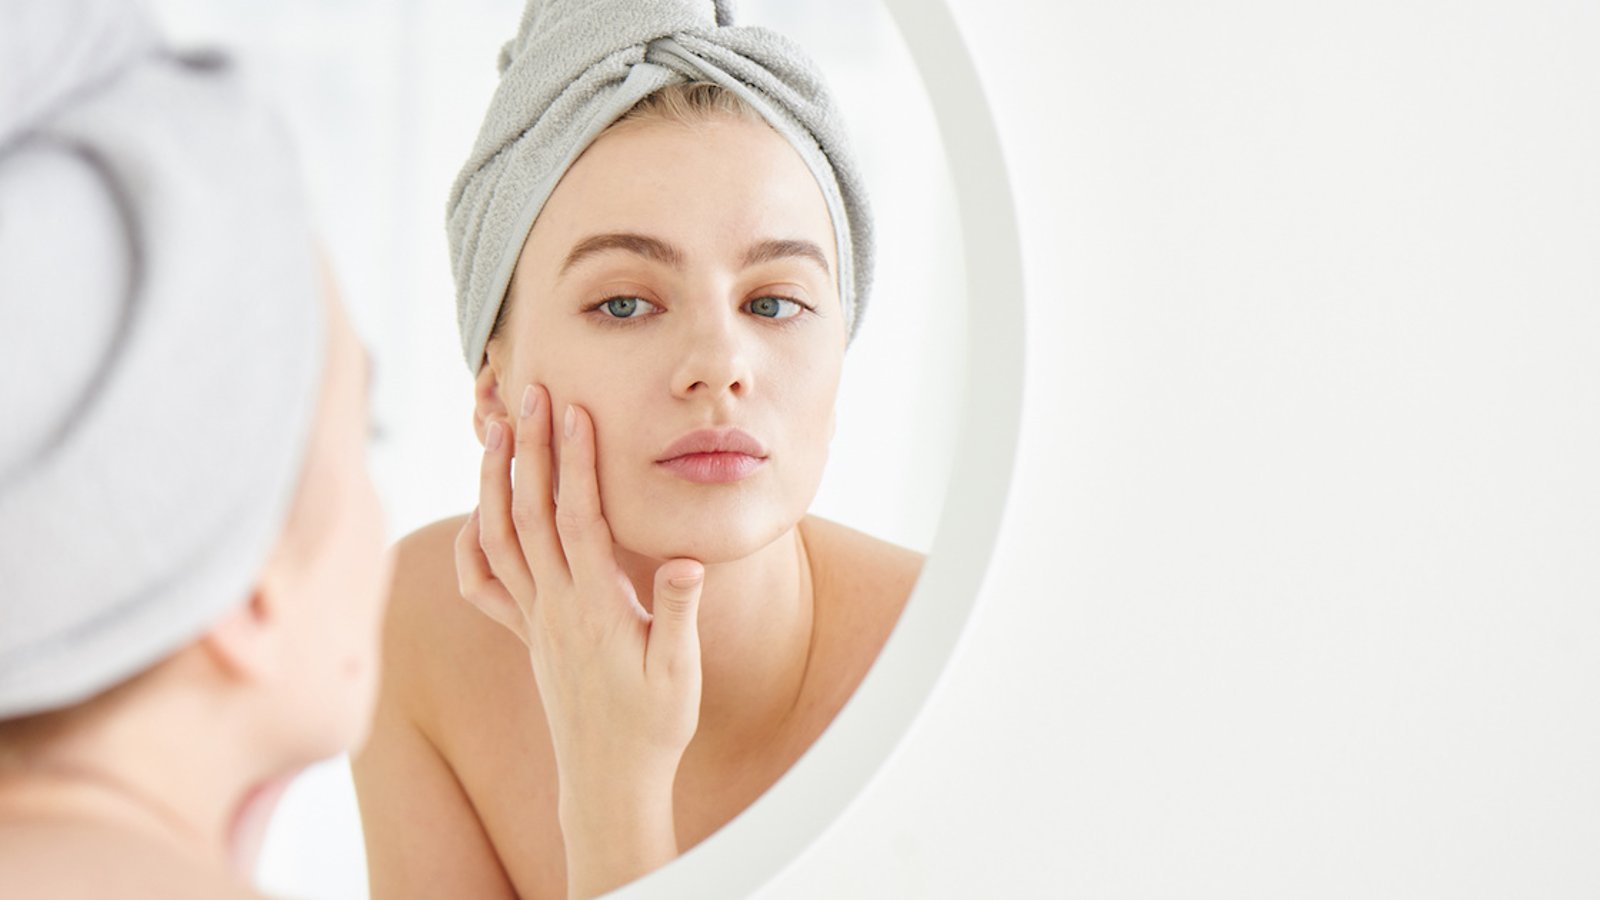 14 mythes au sujet du maquillage et des soins corporels 